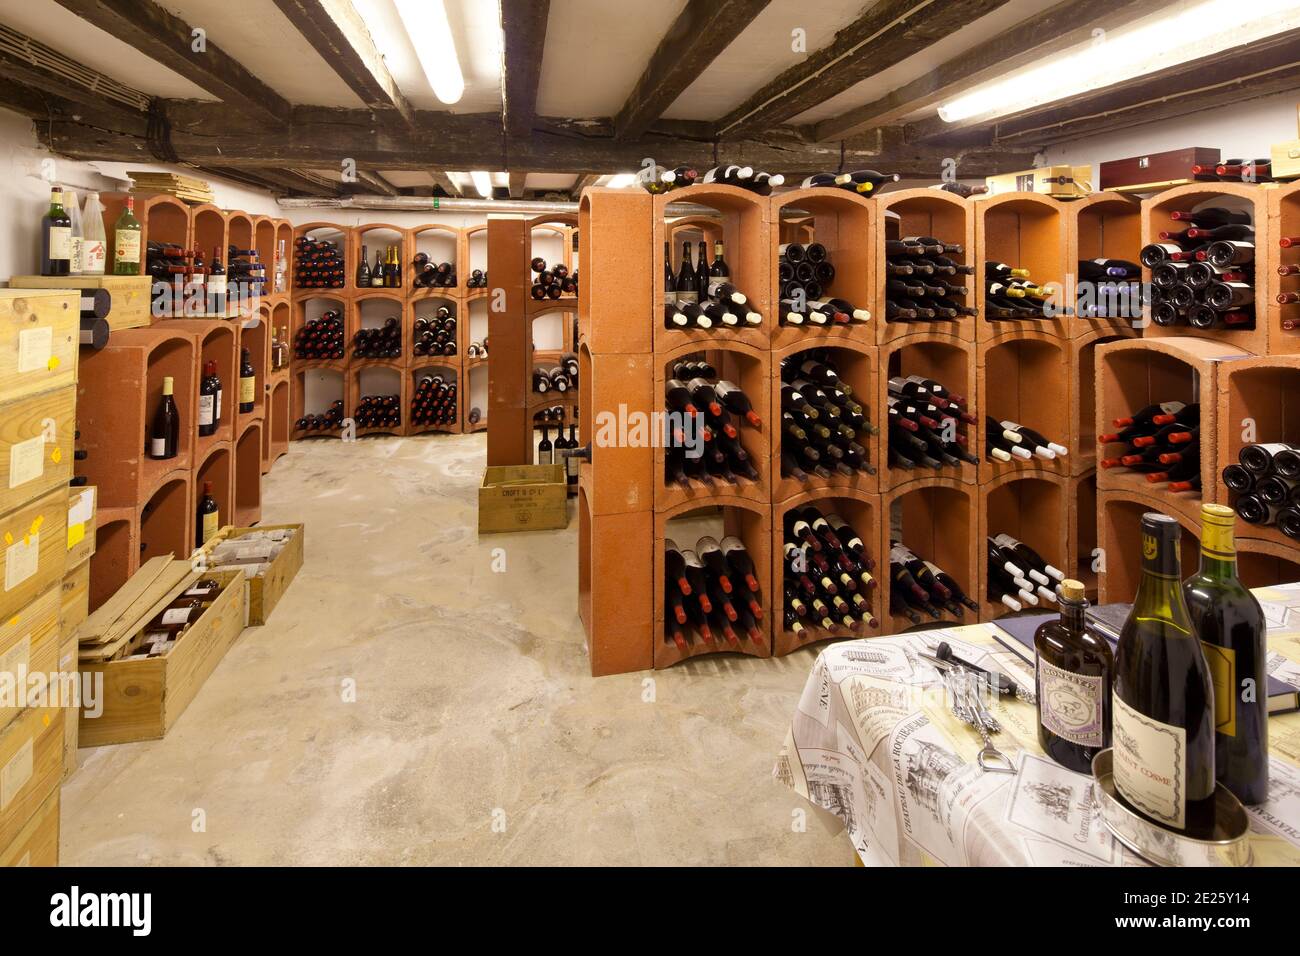 Wine cellar racks, full of wine bottles Stock Photo